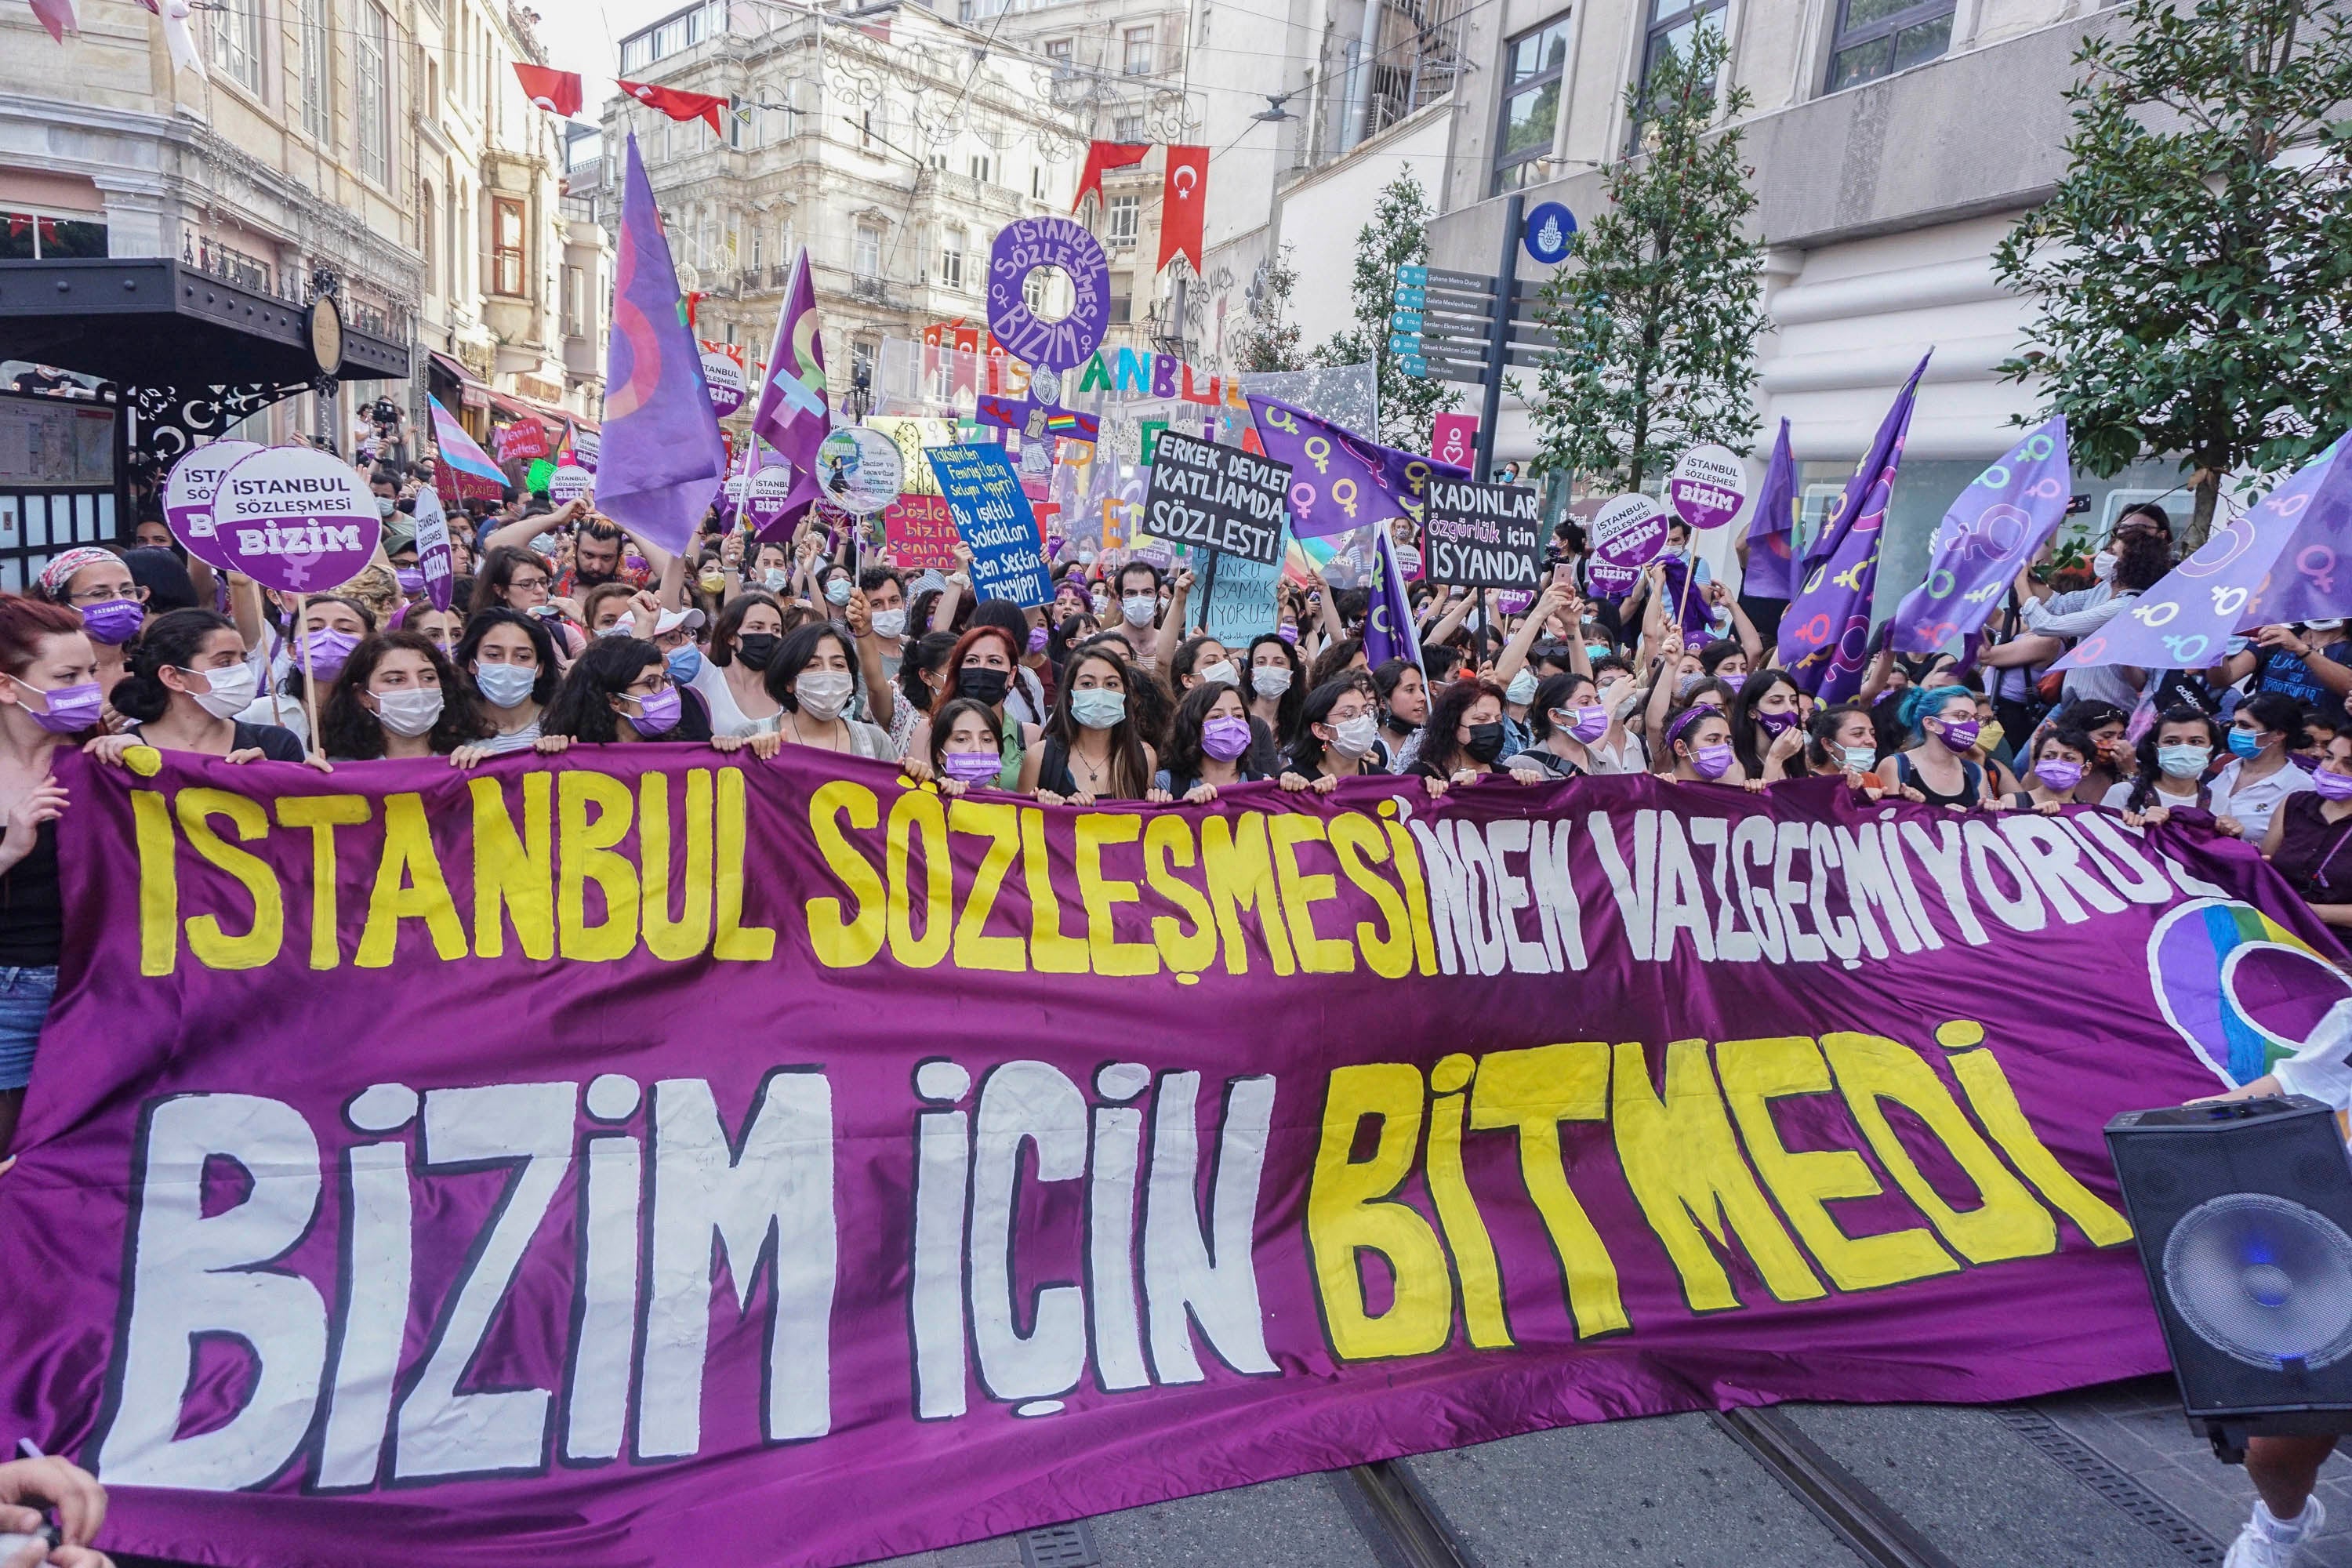 20 Mart 2021'de Cumhurbaşkanı Recep Tayyip Erdoğan, Türkiye'yi Avrupa Konseyi'nin Kadına Yönelik Şiddet ve Aile İçi Şiddetin Önlenmesi ve Bunlarla Mücadeleye İlişkin Sözleşme olarak bilinen ve Türkiye'deki kadın hakları hareketi tarafından güçlü bir şekilde desteklenen ve çığır açan bir anlaşma olan İstanbul Sözleşmesi'nden çeken bir kararname yayınladı. Göstericiler, "İstanbul Sözleşmesi'nden vazgeçmiyoruz. Bizim için bitmedi" yazılı bir pankart taşıyor. İstanbul/Türkiye 1 Temmuz 2021